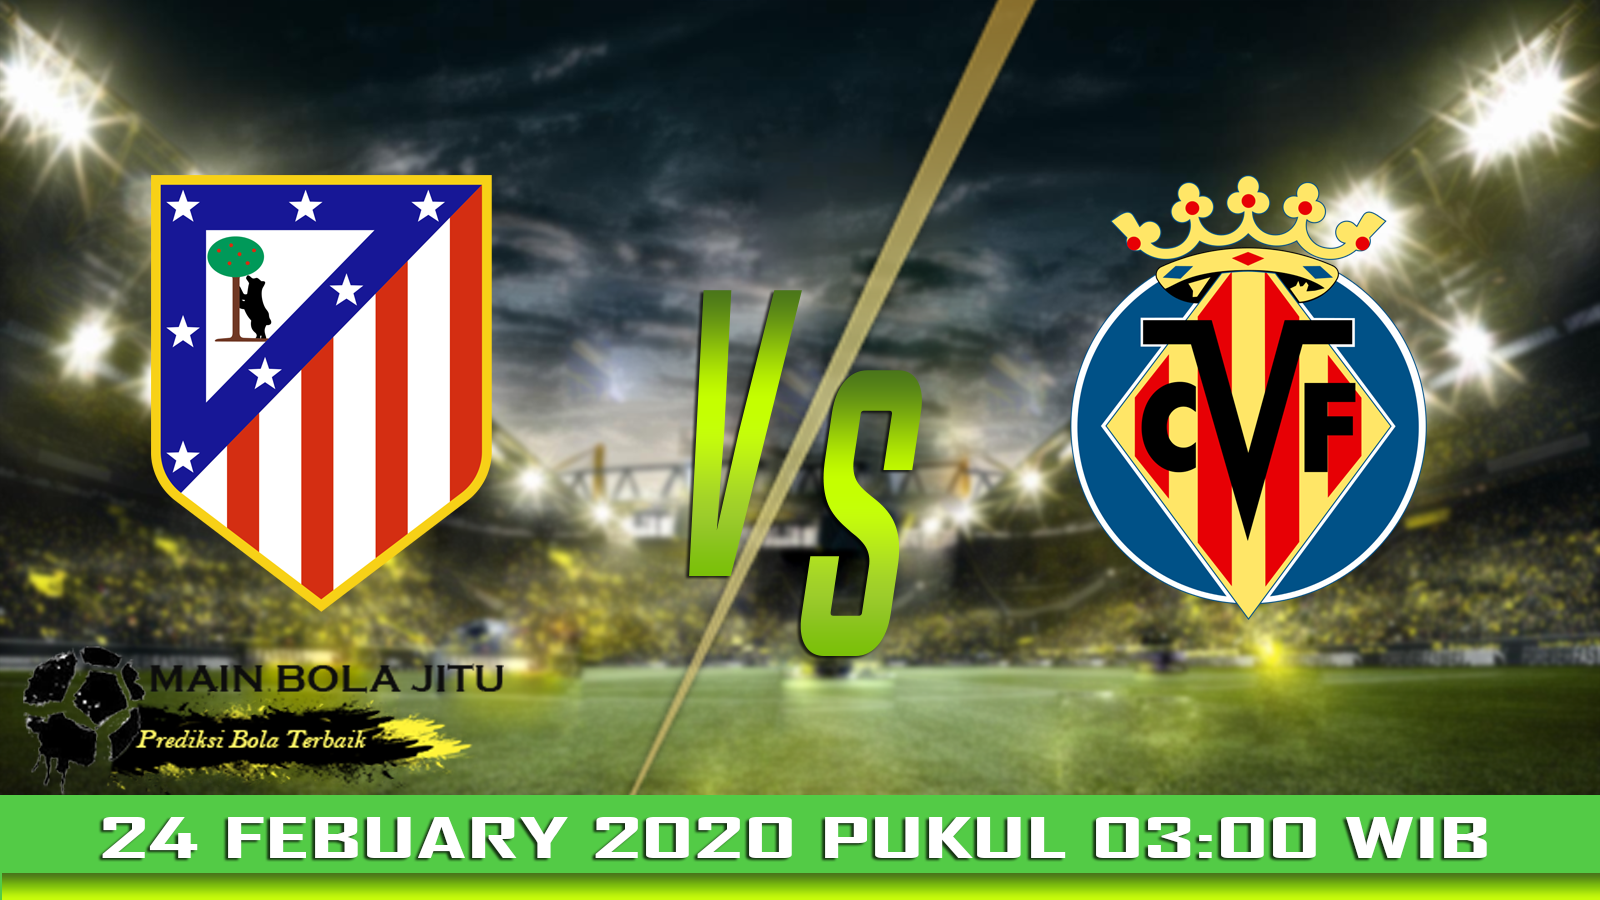 Prediksi Skor Atl. Madrid vs Villarreal tanggal 24-02-2020